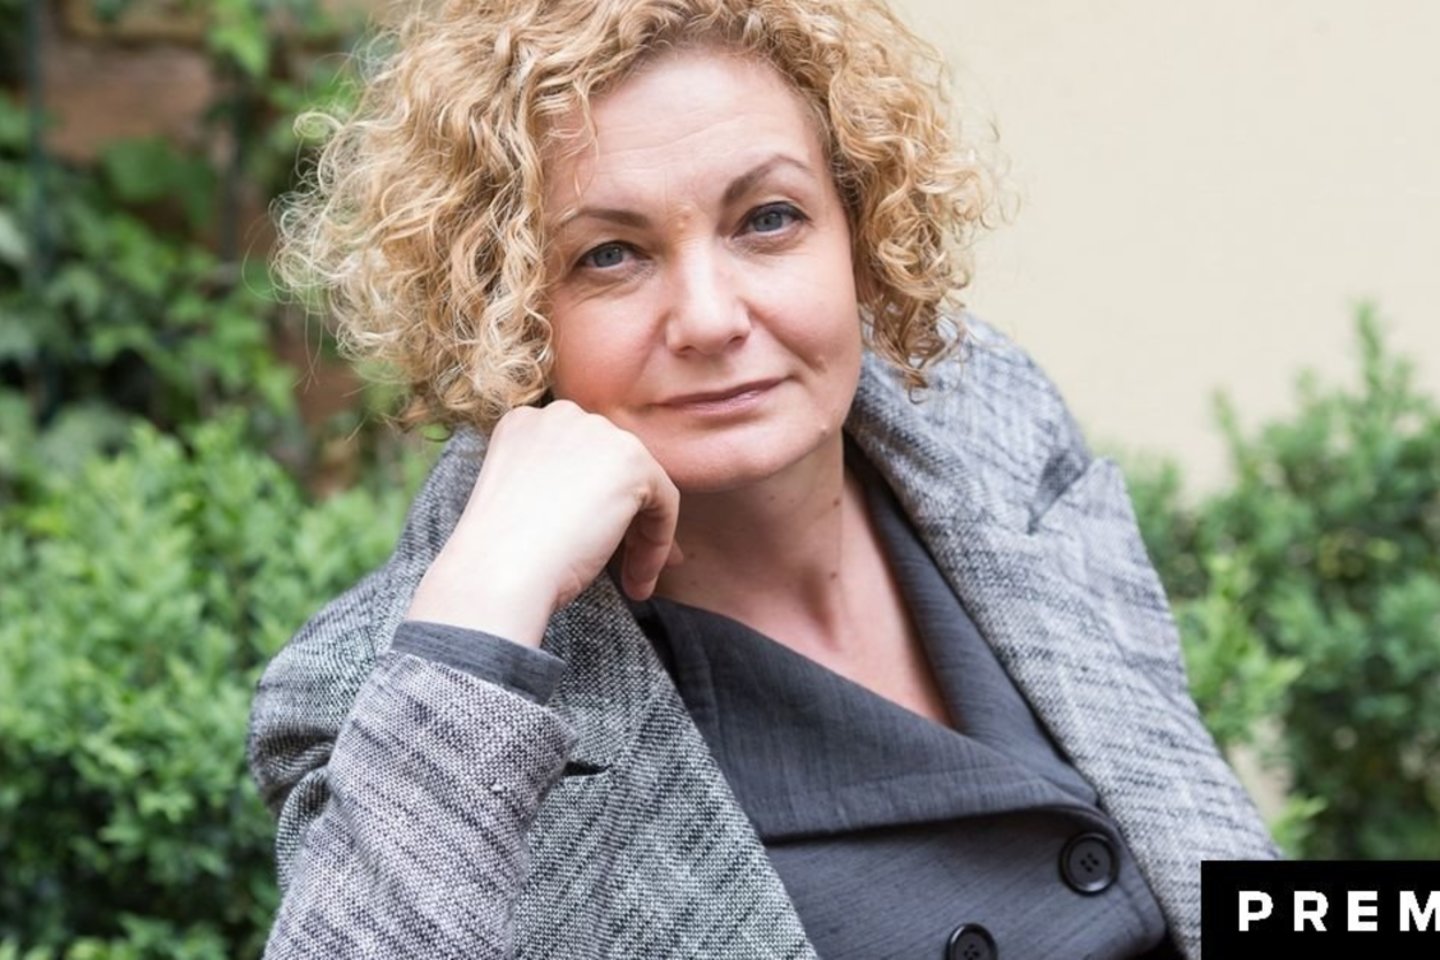  Lygių galimybių plėtros centro ekspertė Margarita Jankauskaitė.